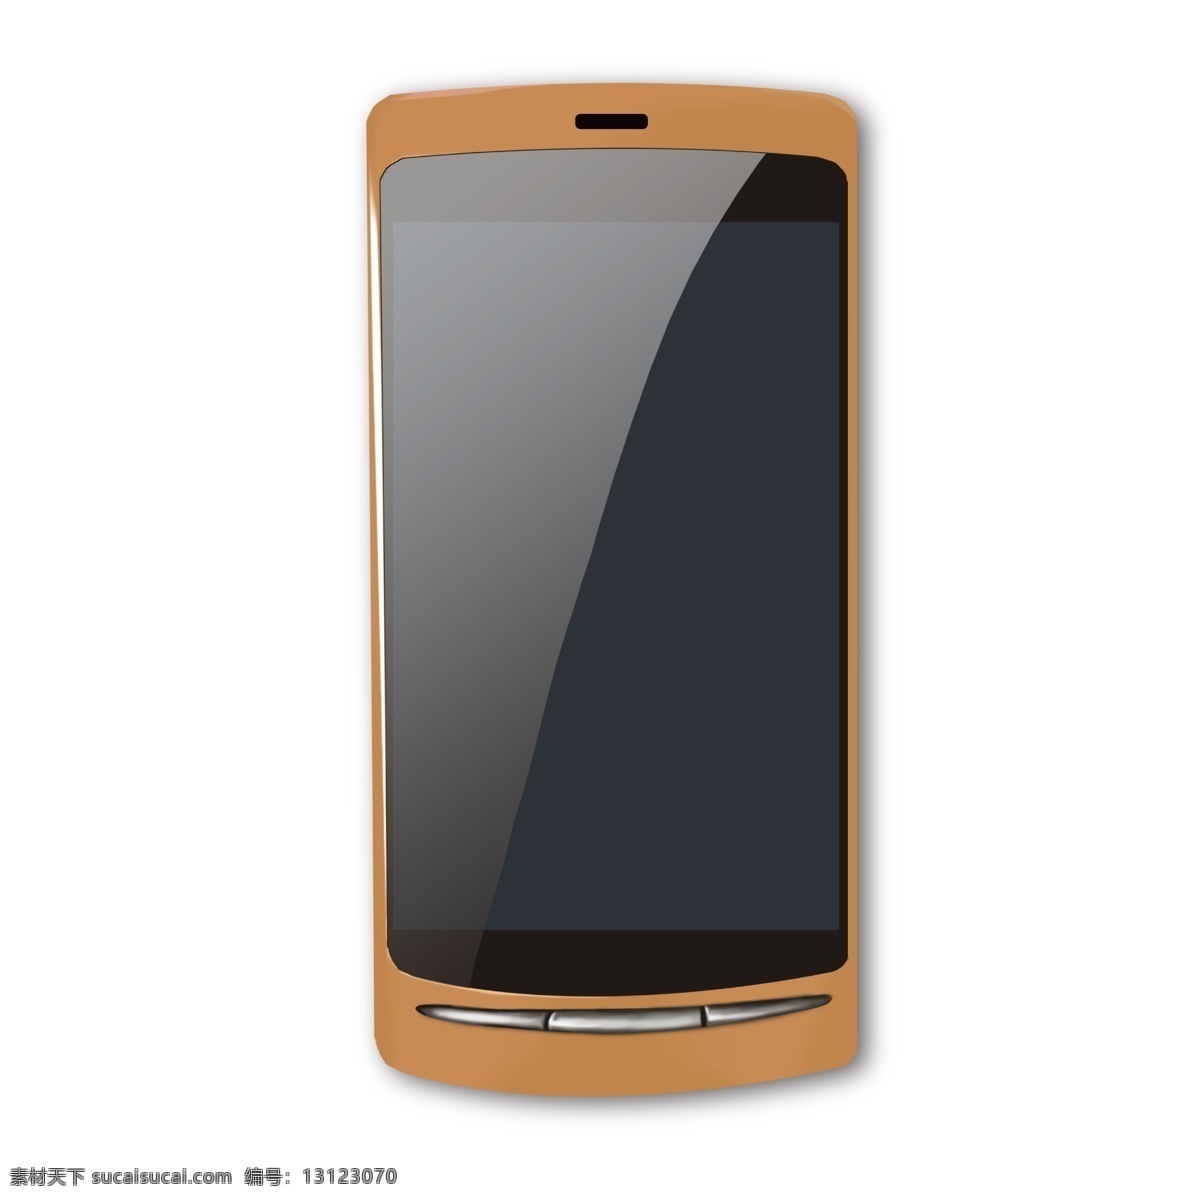 橙色 3d 仿真 手机 手绘手机 橙色系手机 虚拟手机 模拟手机 超薄手机 3d手机 写实手机 触屏手机